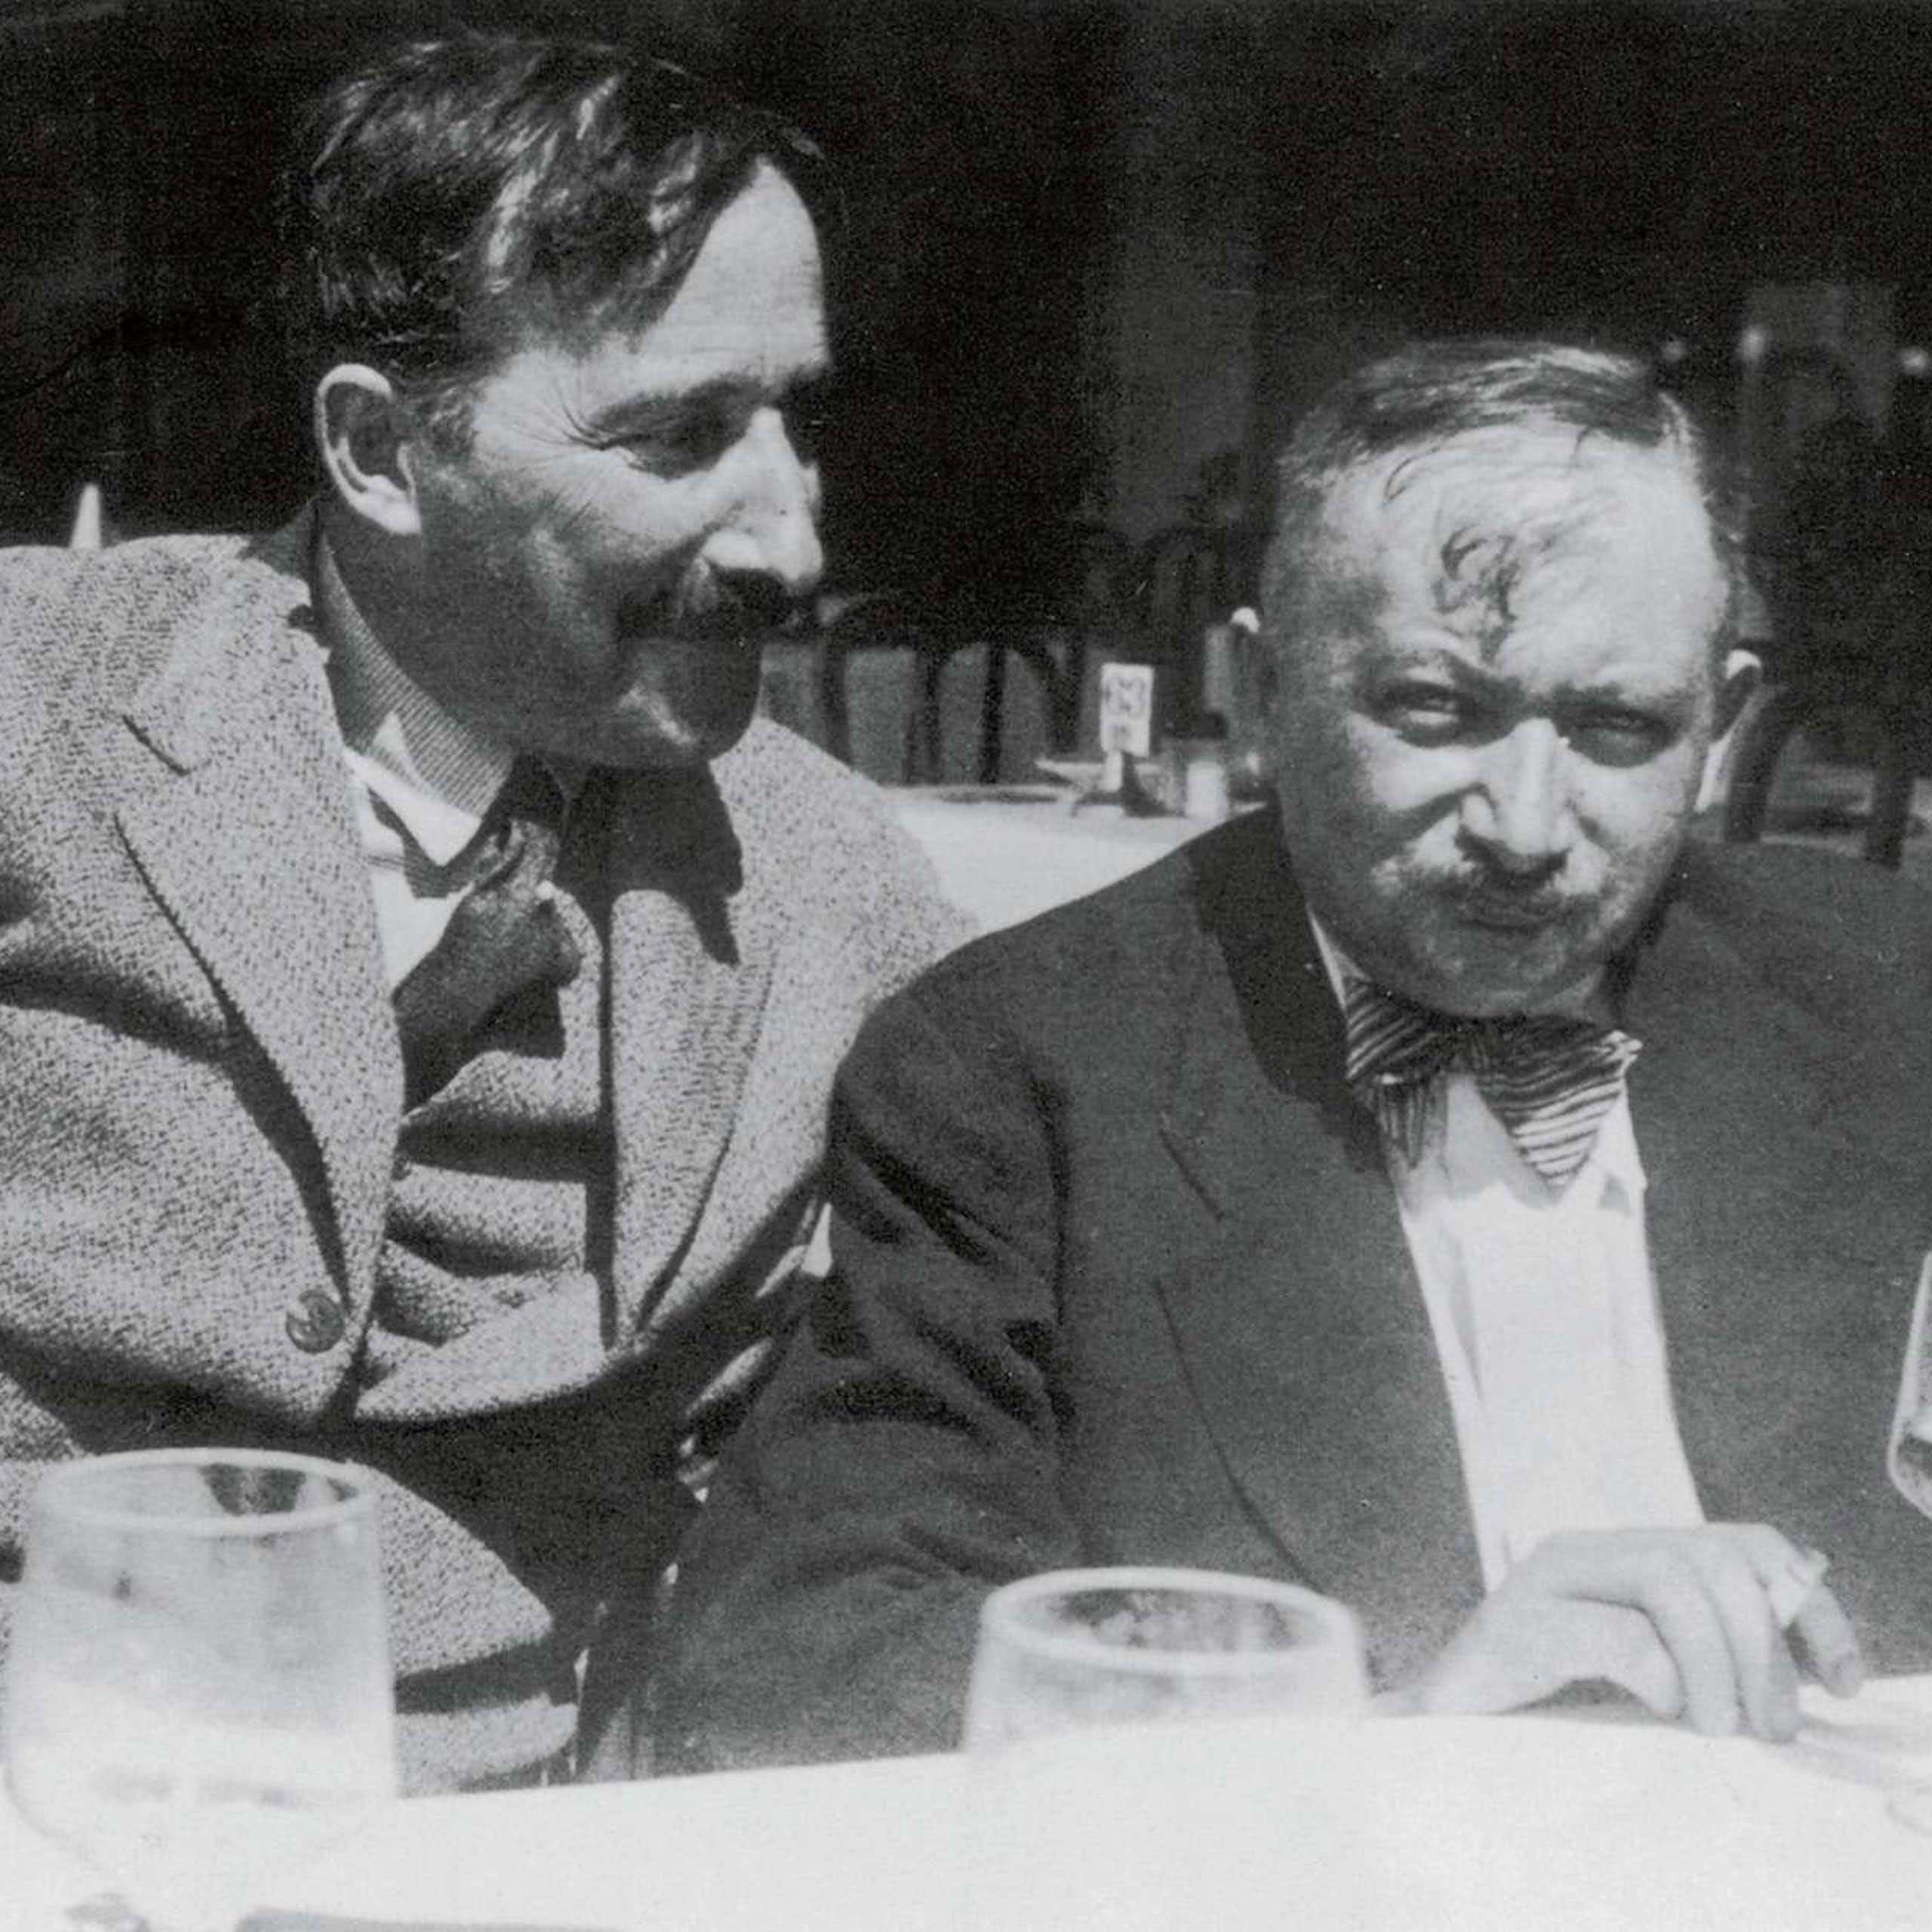 Fotografía de Stefan Zweig y Joseph Roth en Ostende, verano de 1936. Fotografía probablemente de Lotte Altmann, secretaria de Zweig.